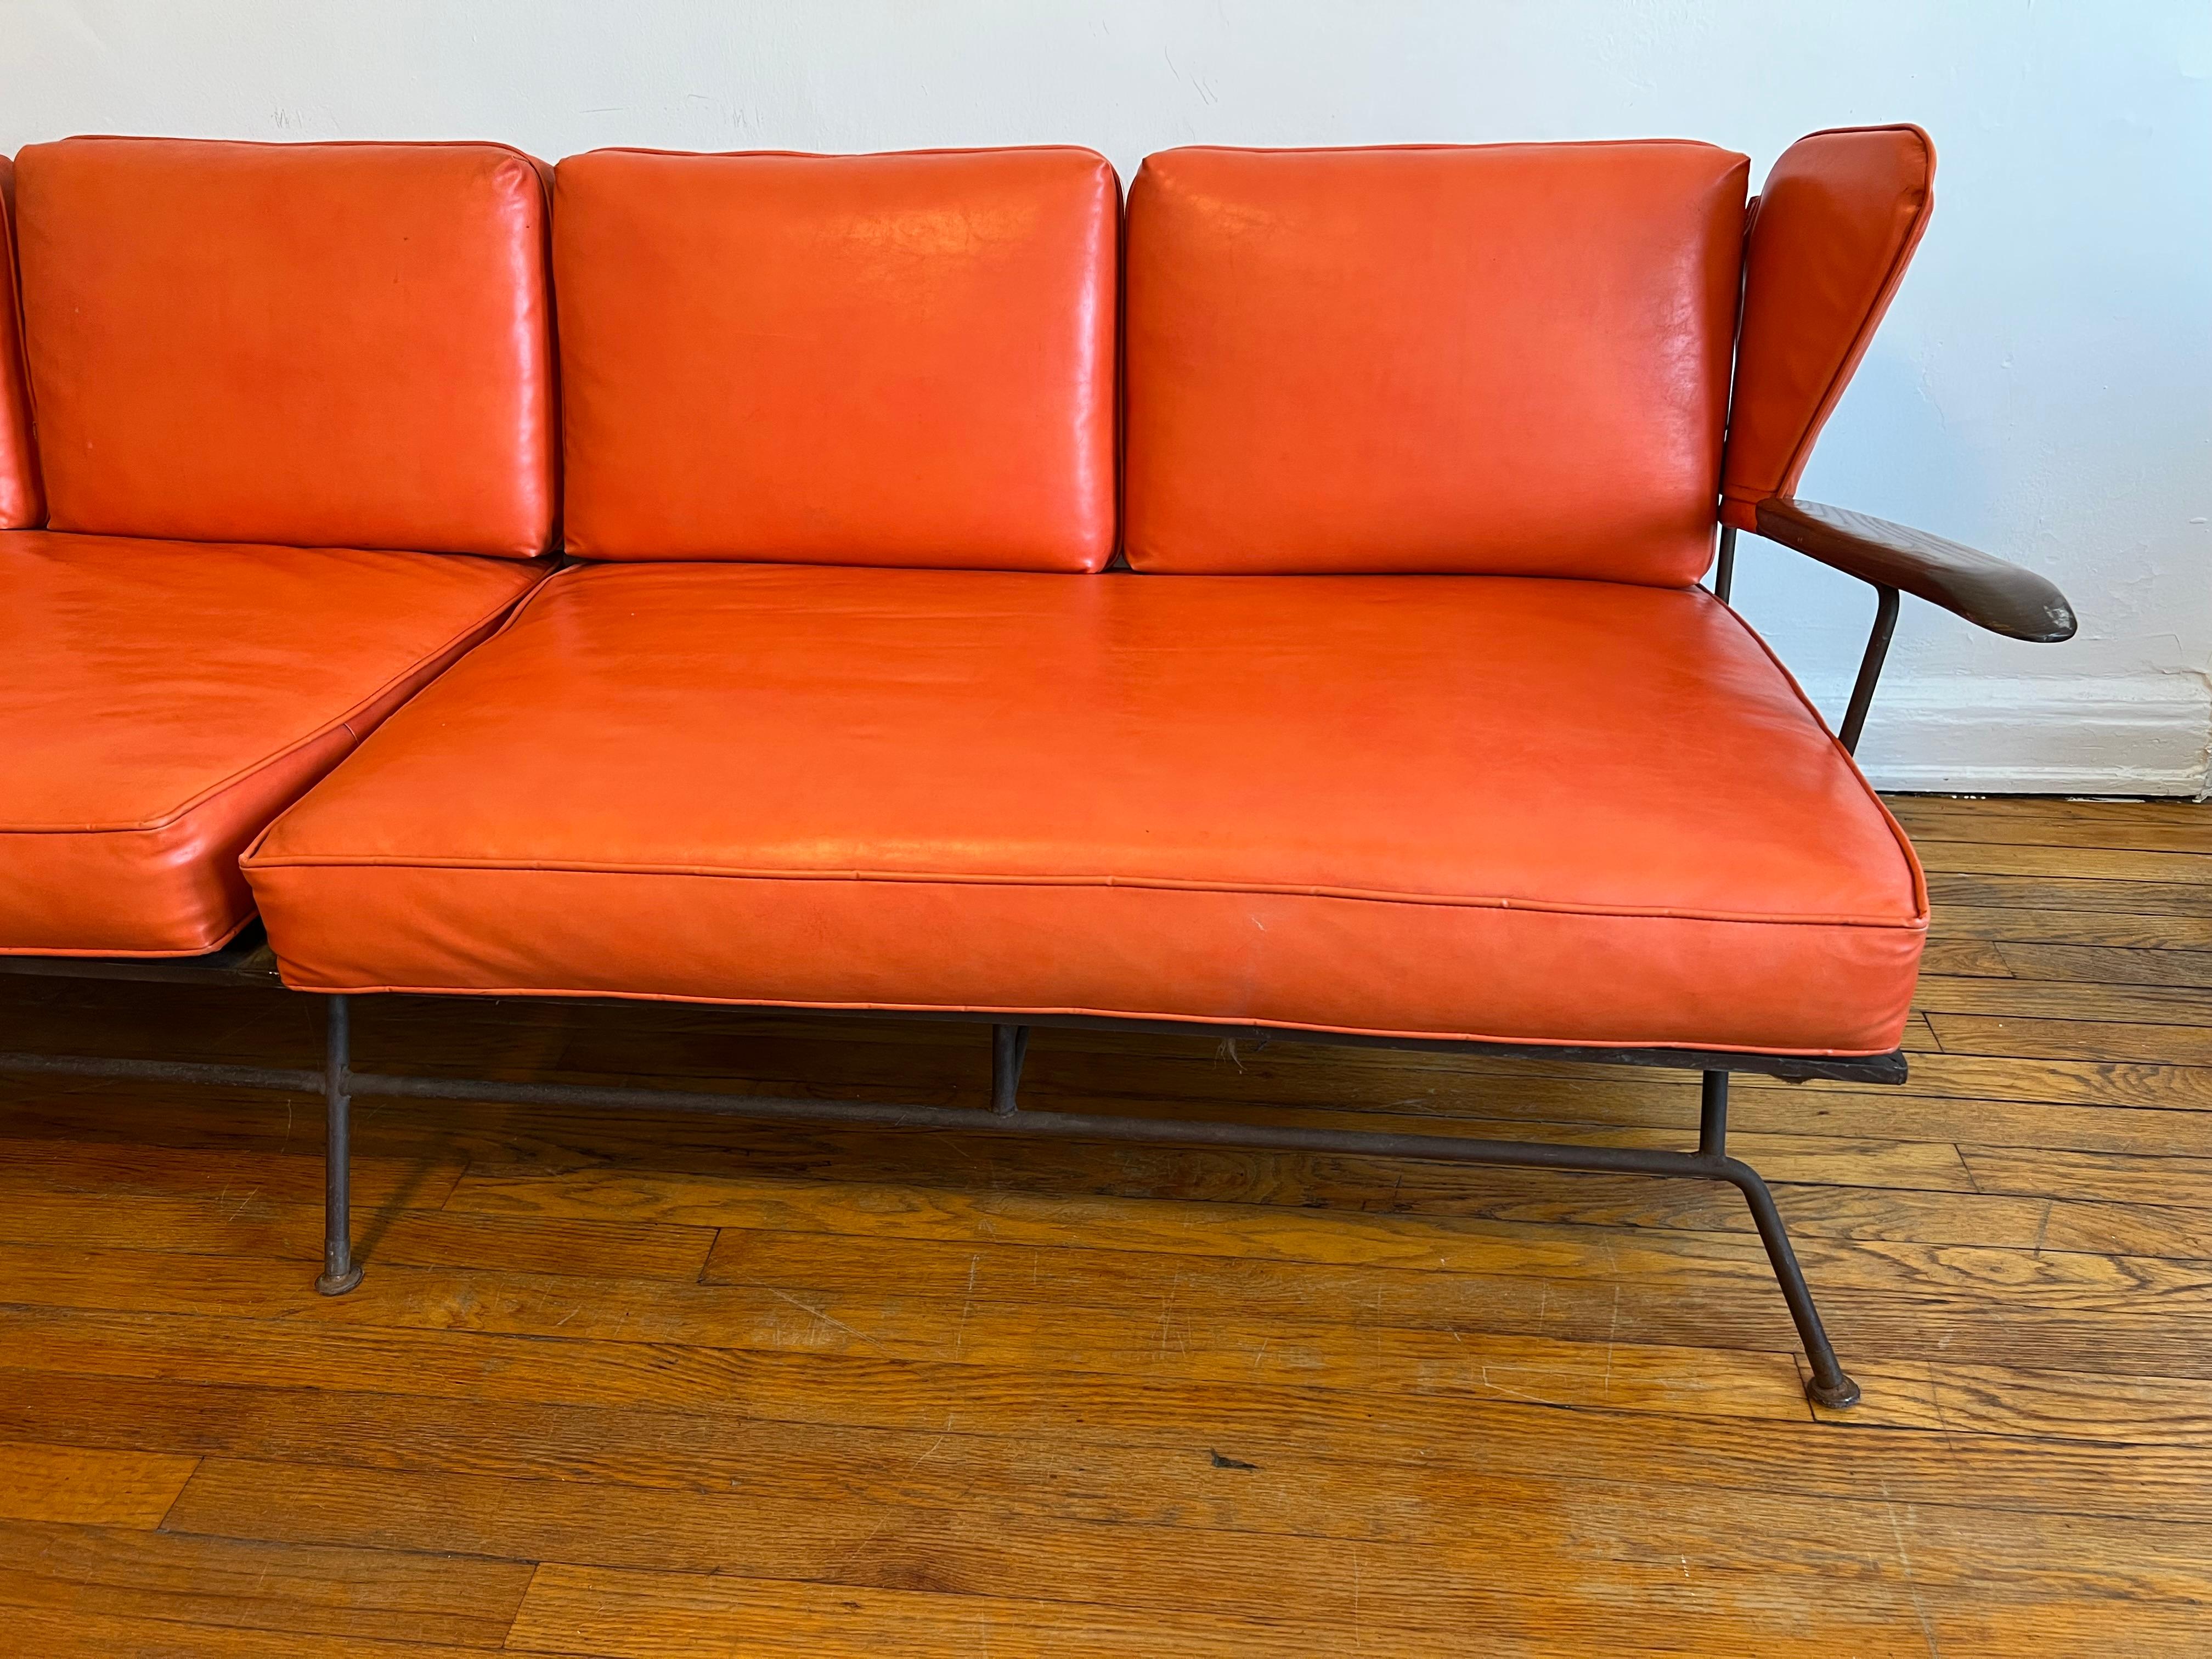 Très rare canapé du forgeron de Caroline du Nord et du designer et fabricant de meubles Max Stout.

Le canapé est en parfait état d'origine avec les coussins d'origine (mousse) et le tissu Naugahyde orange d'origine. Il y a une petite